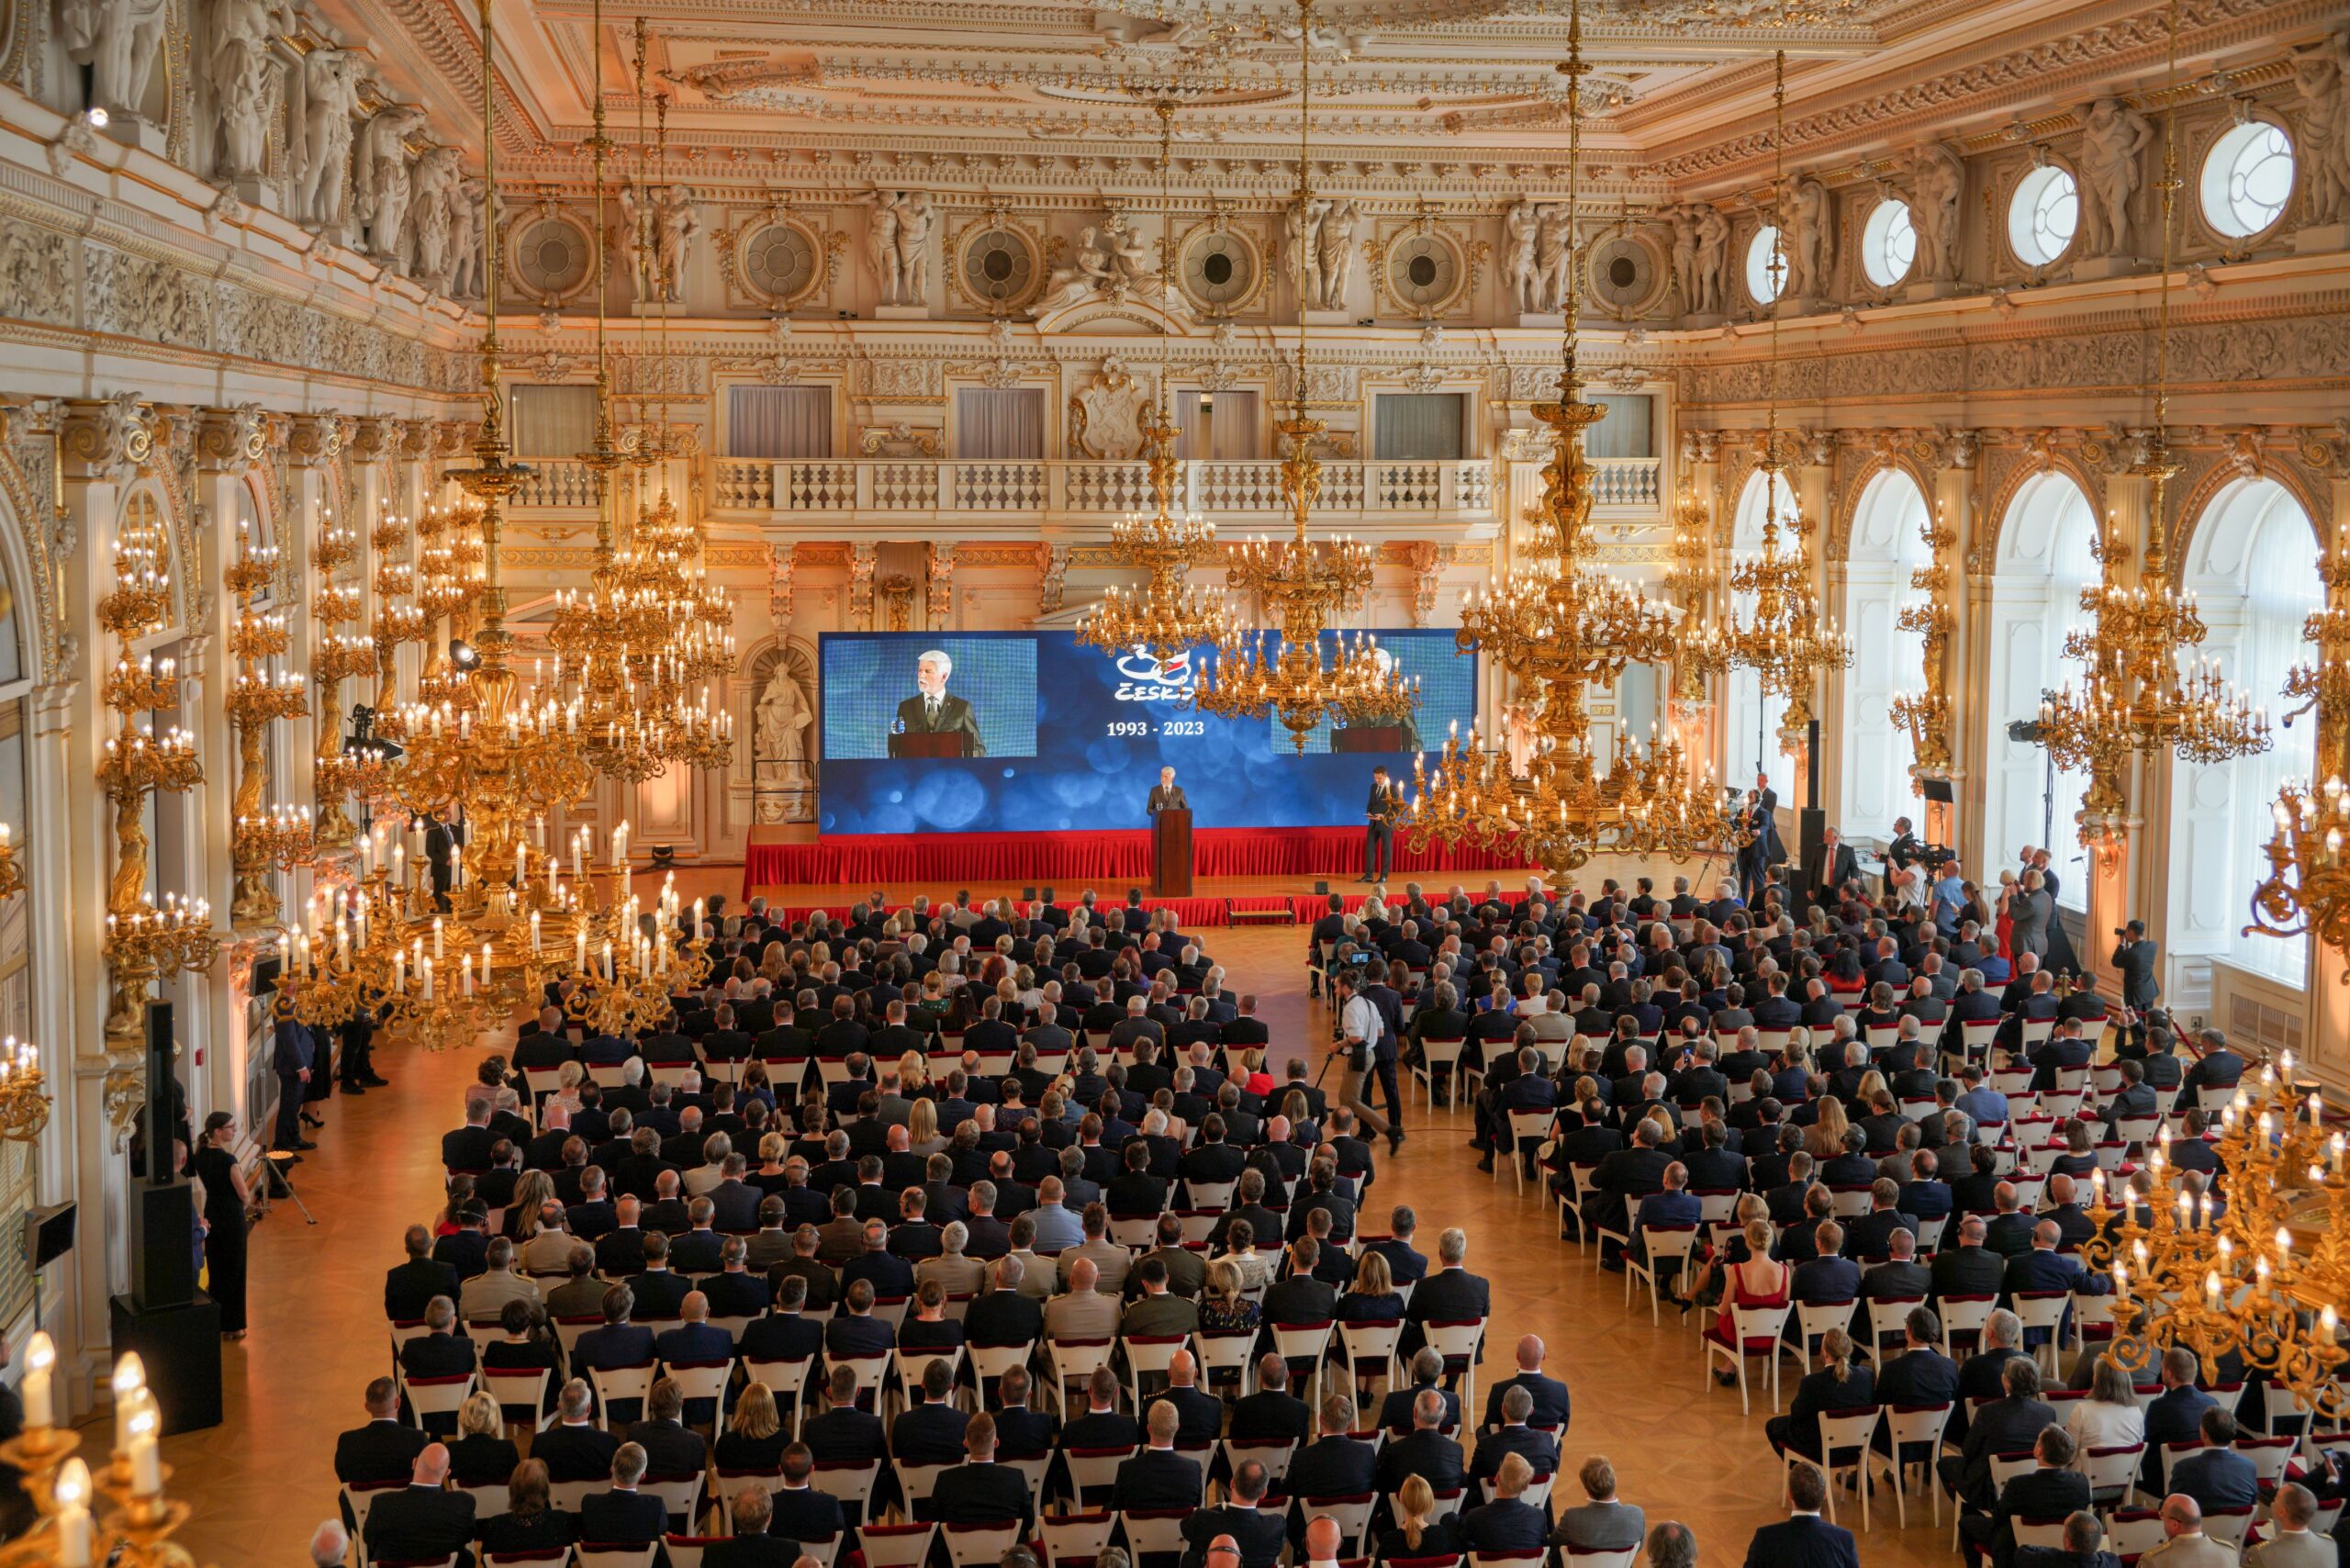 Slavnostní ceremonie při příležitosti 30. výročí vzniku České republiky